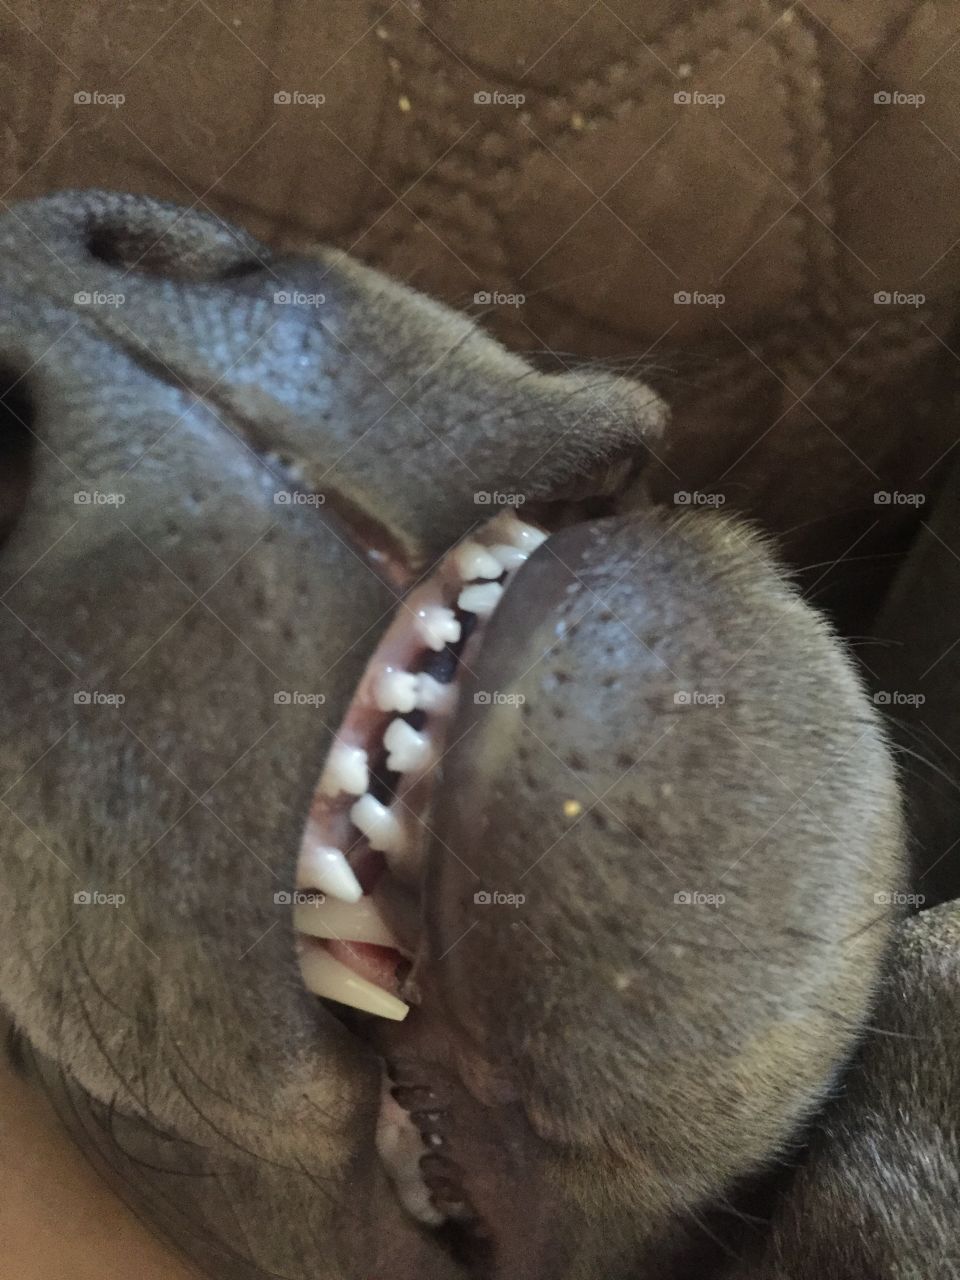 Puppy teeth! 